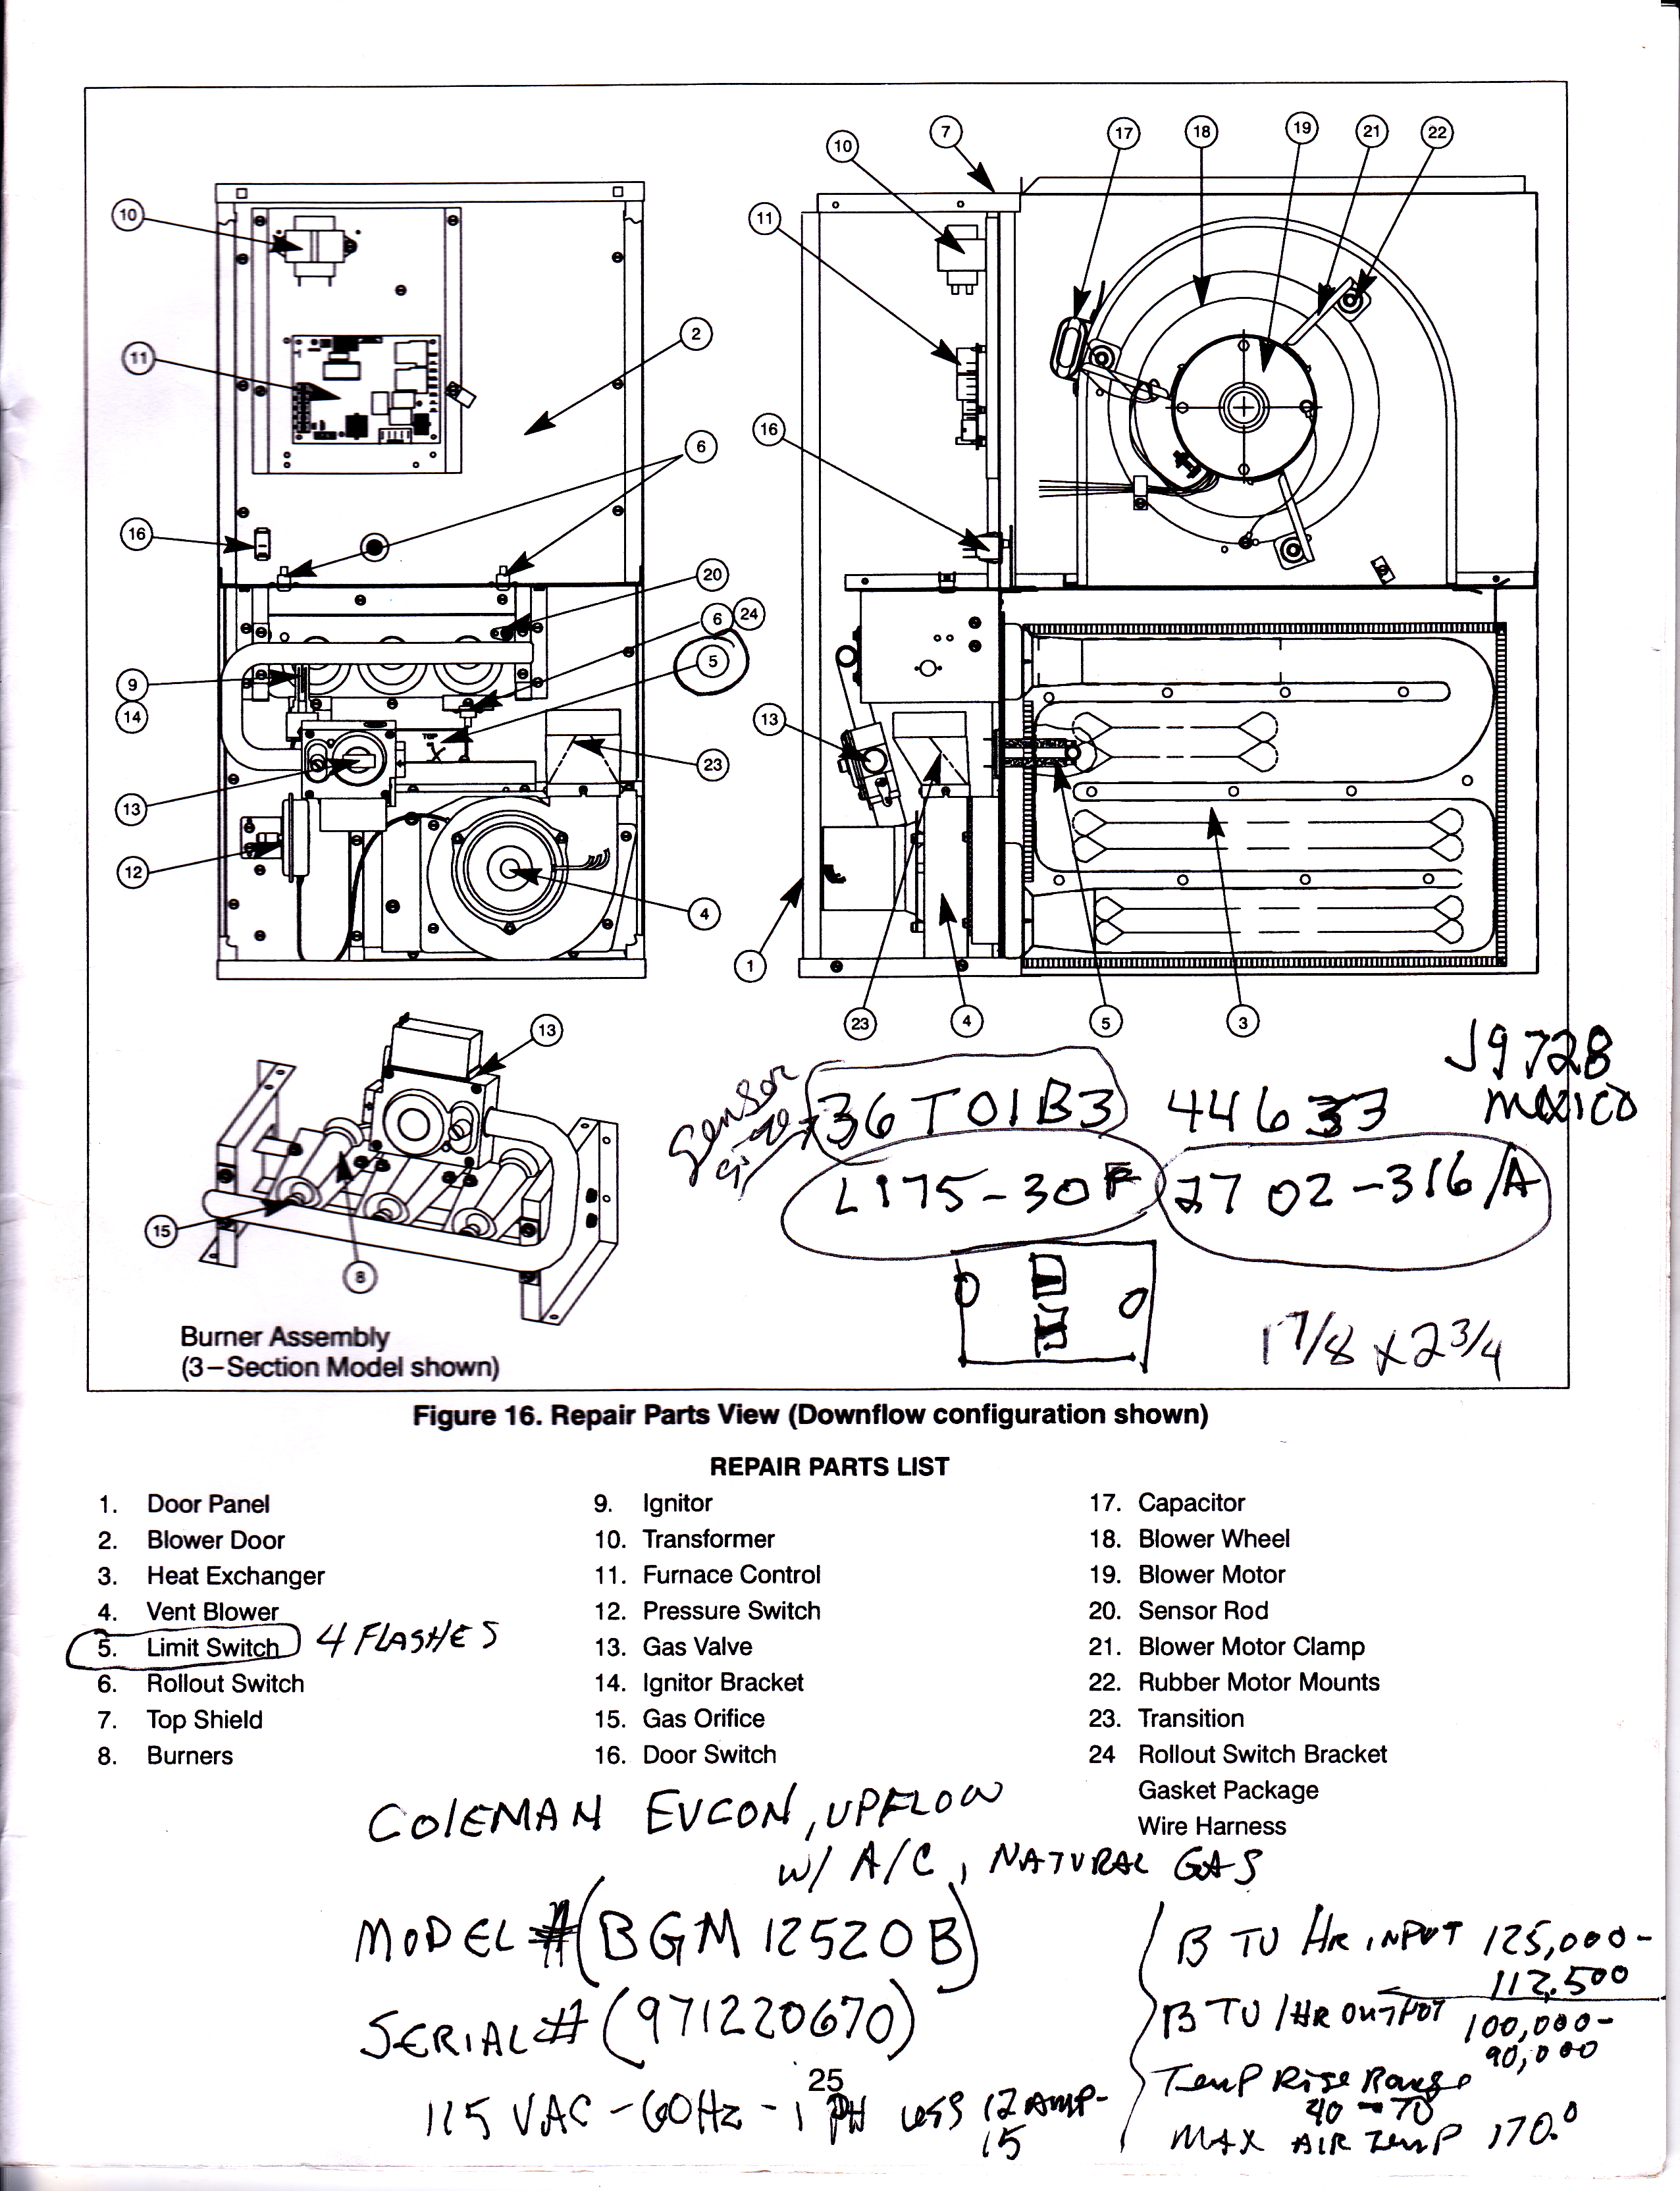 Coleman Evcon Heat Pump Wiring Diagram from schematron.org